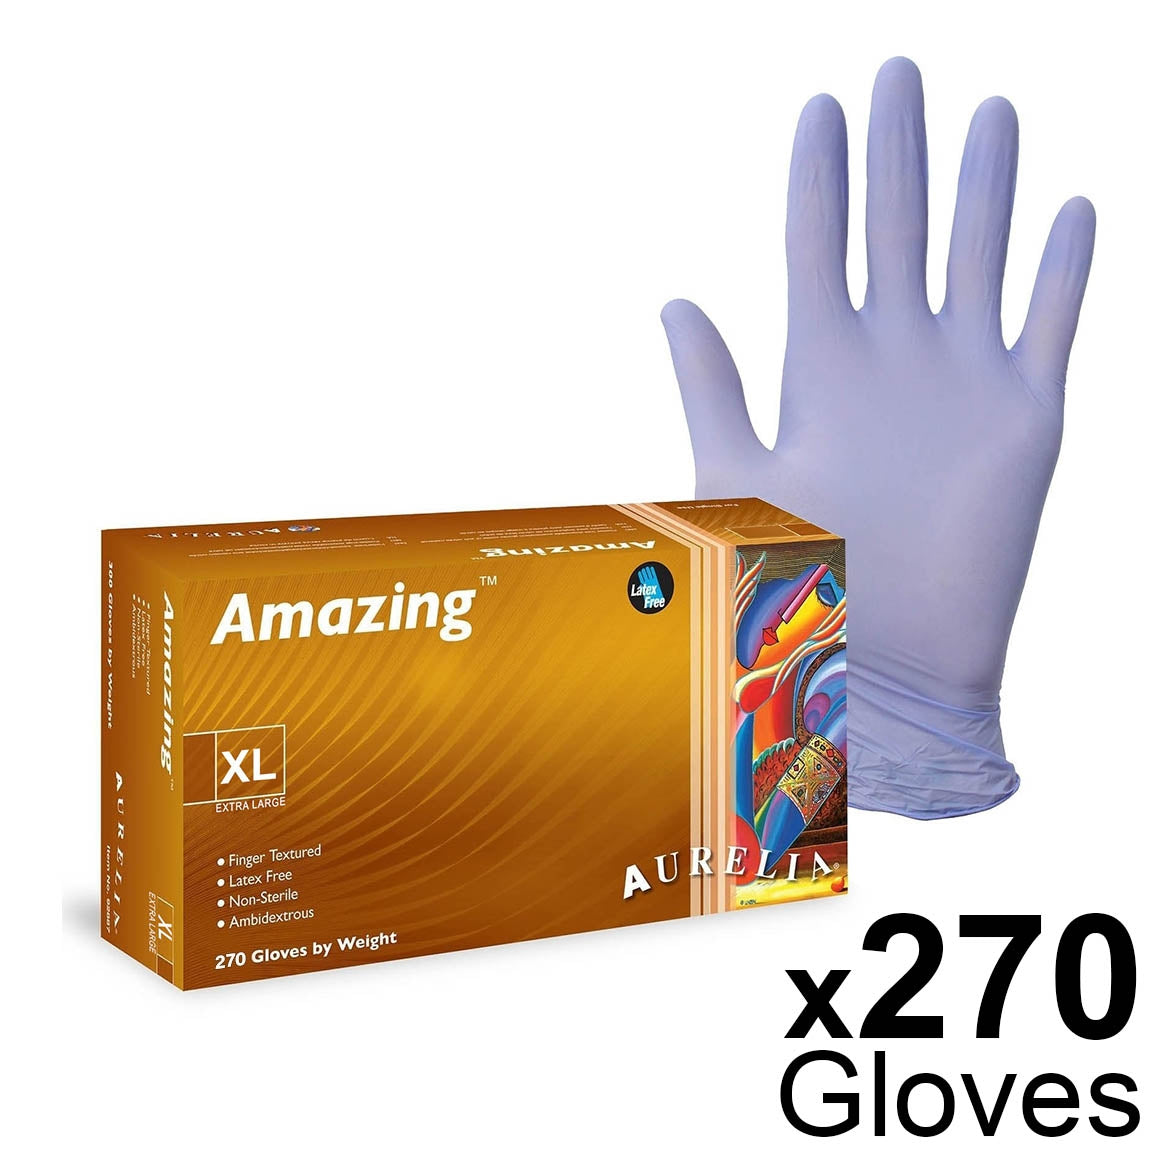 Amazing Aurelia Nitrile Powder-Free Examination Gloves - Box of 300